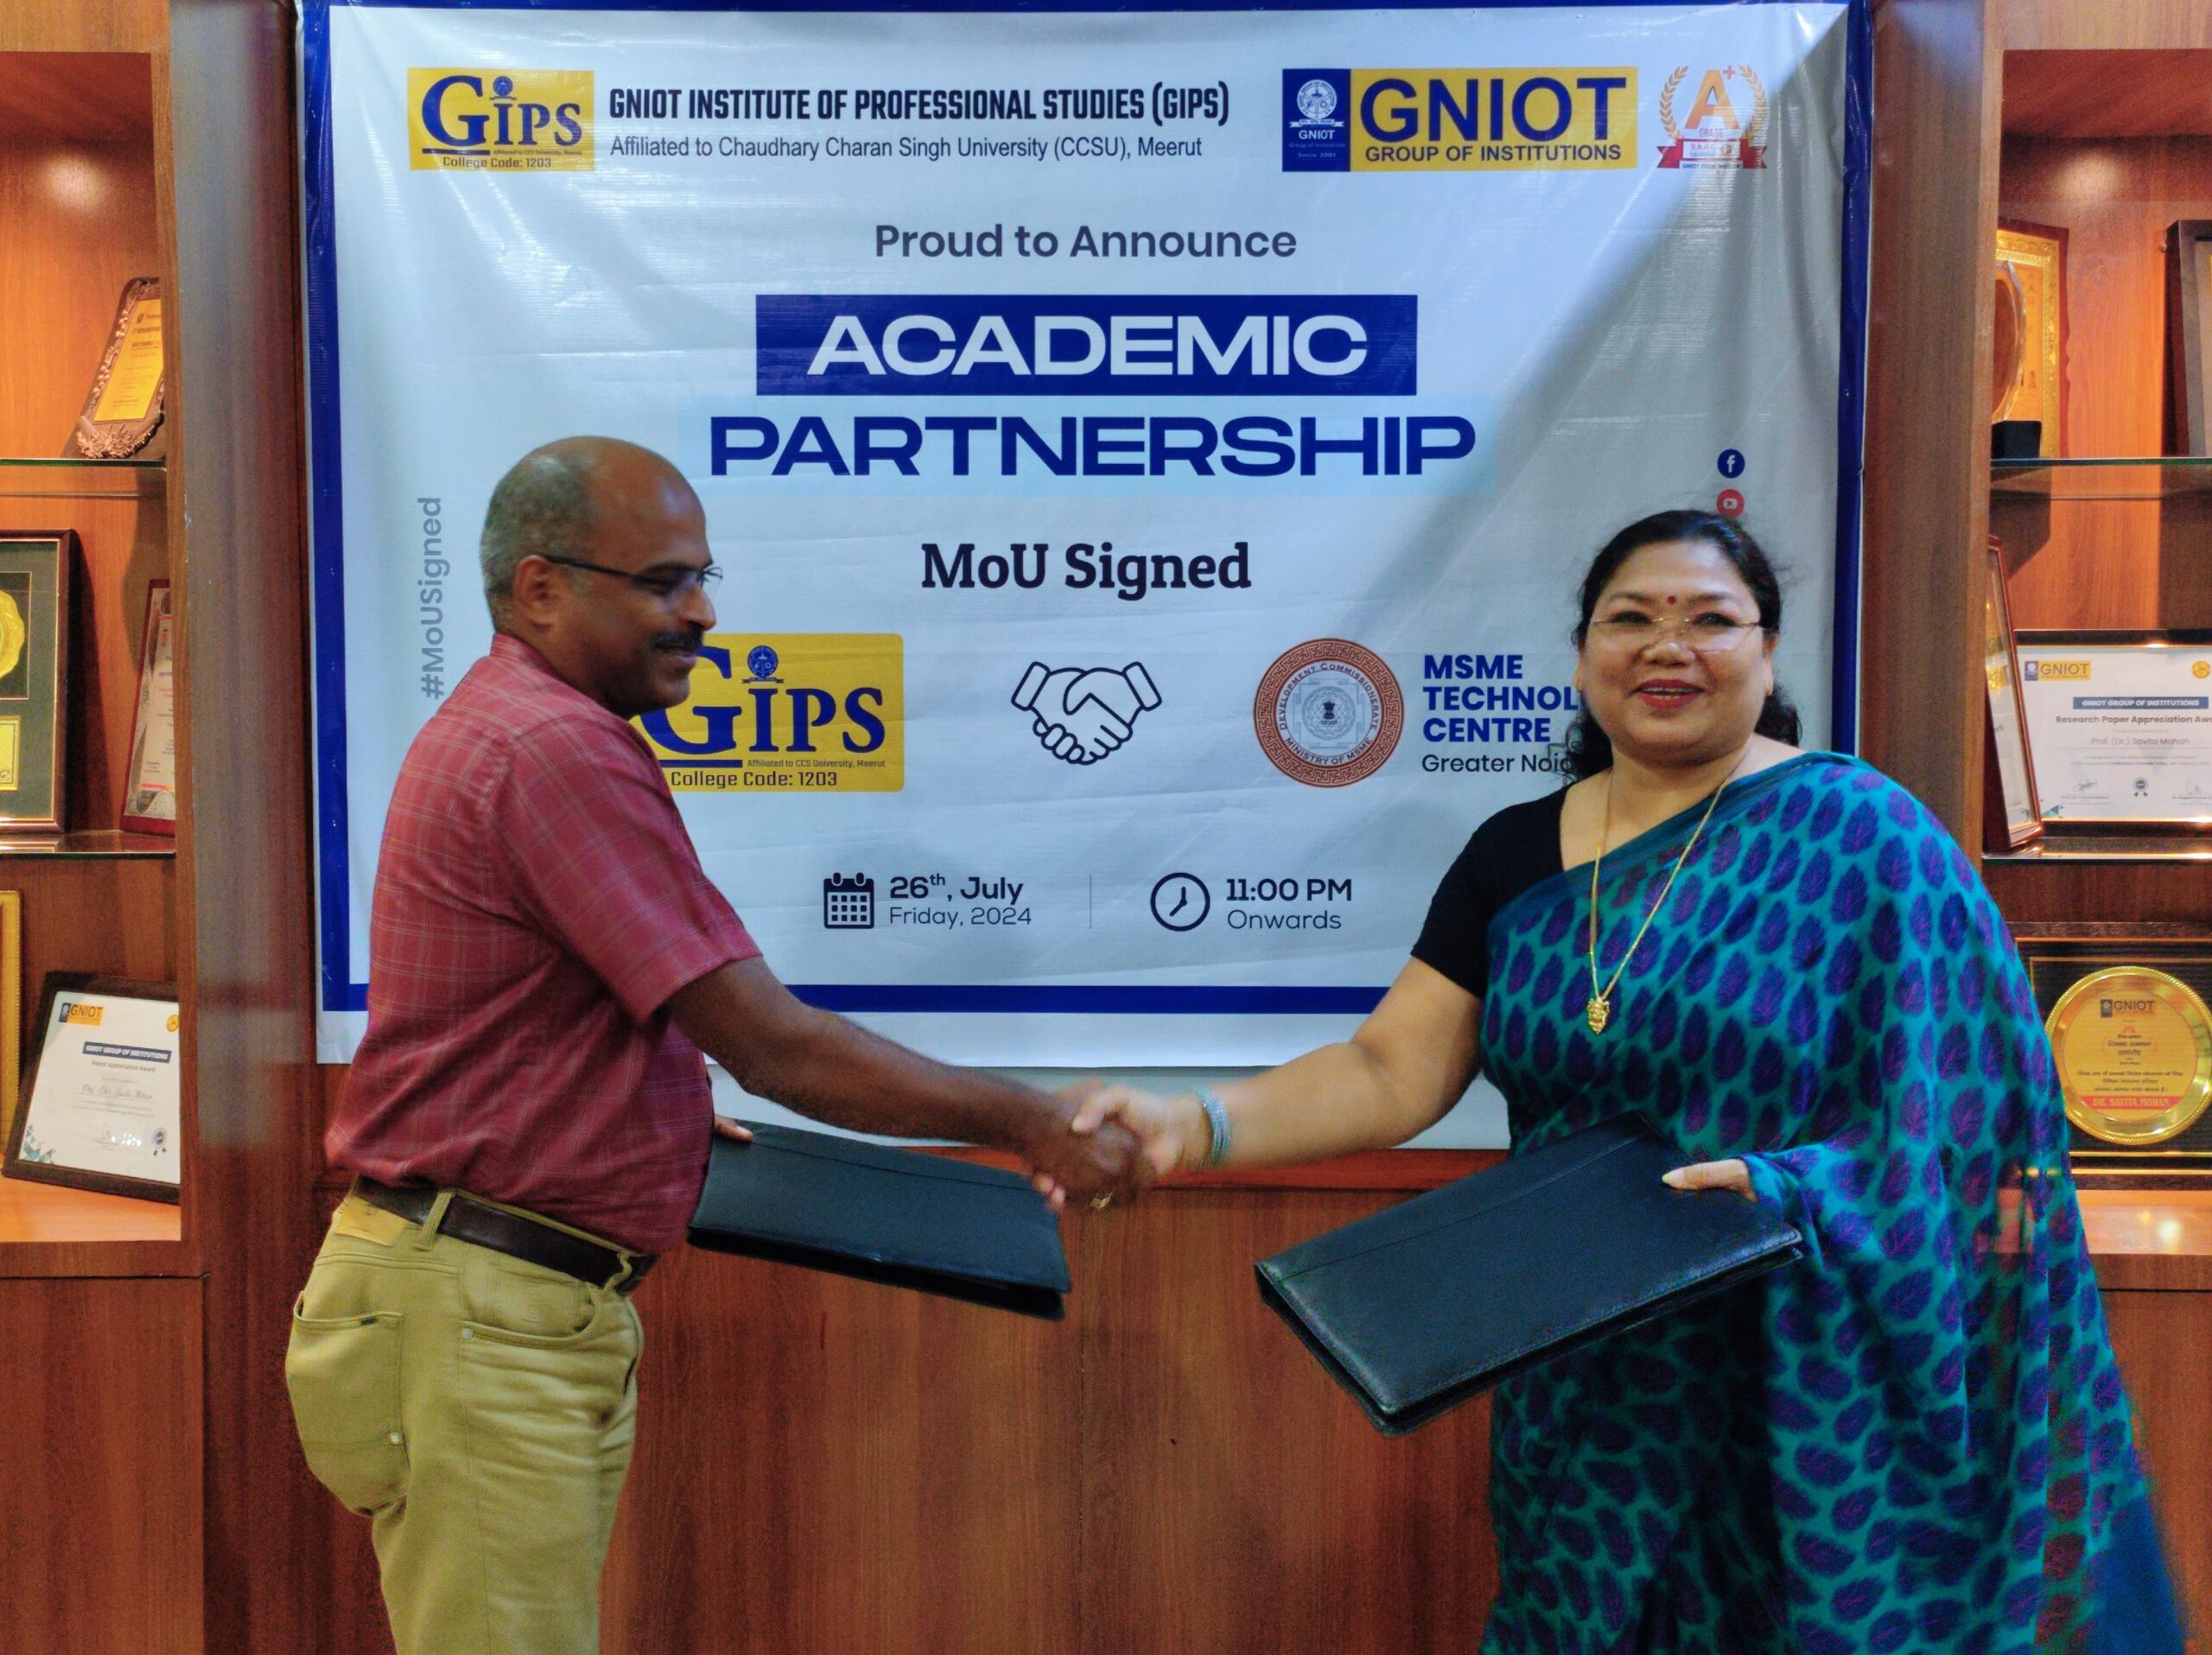 एमएसएमई प्रौद्योगिकी केंद्र और जीएनआईओटी इंस्टीट्यूट ऑफ प्रोफेशनल स्टडीज़ के बीच एम ओ यू पर हस्ताक्षर।